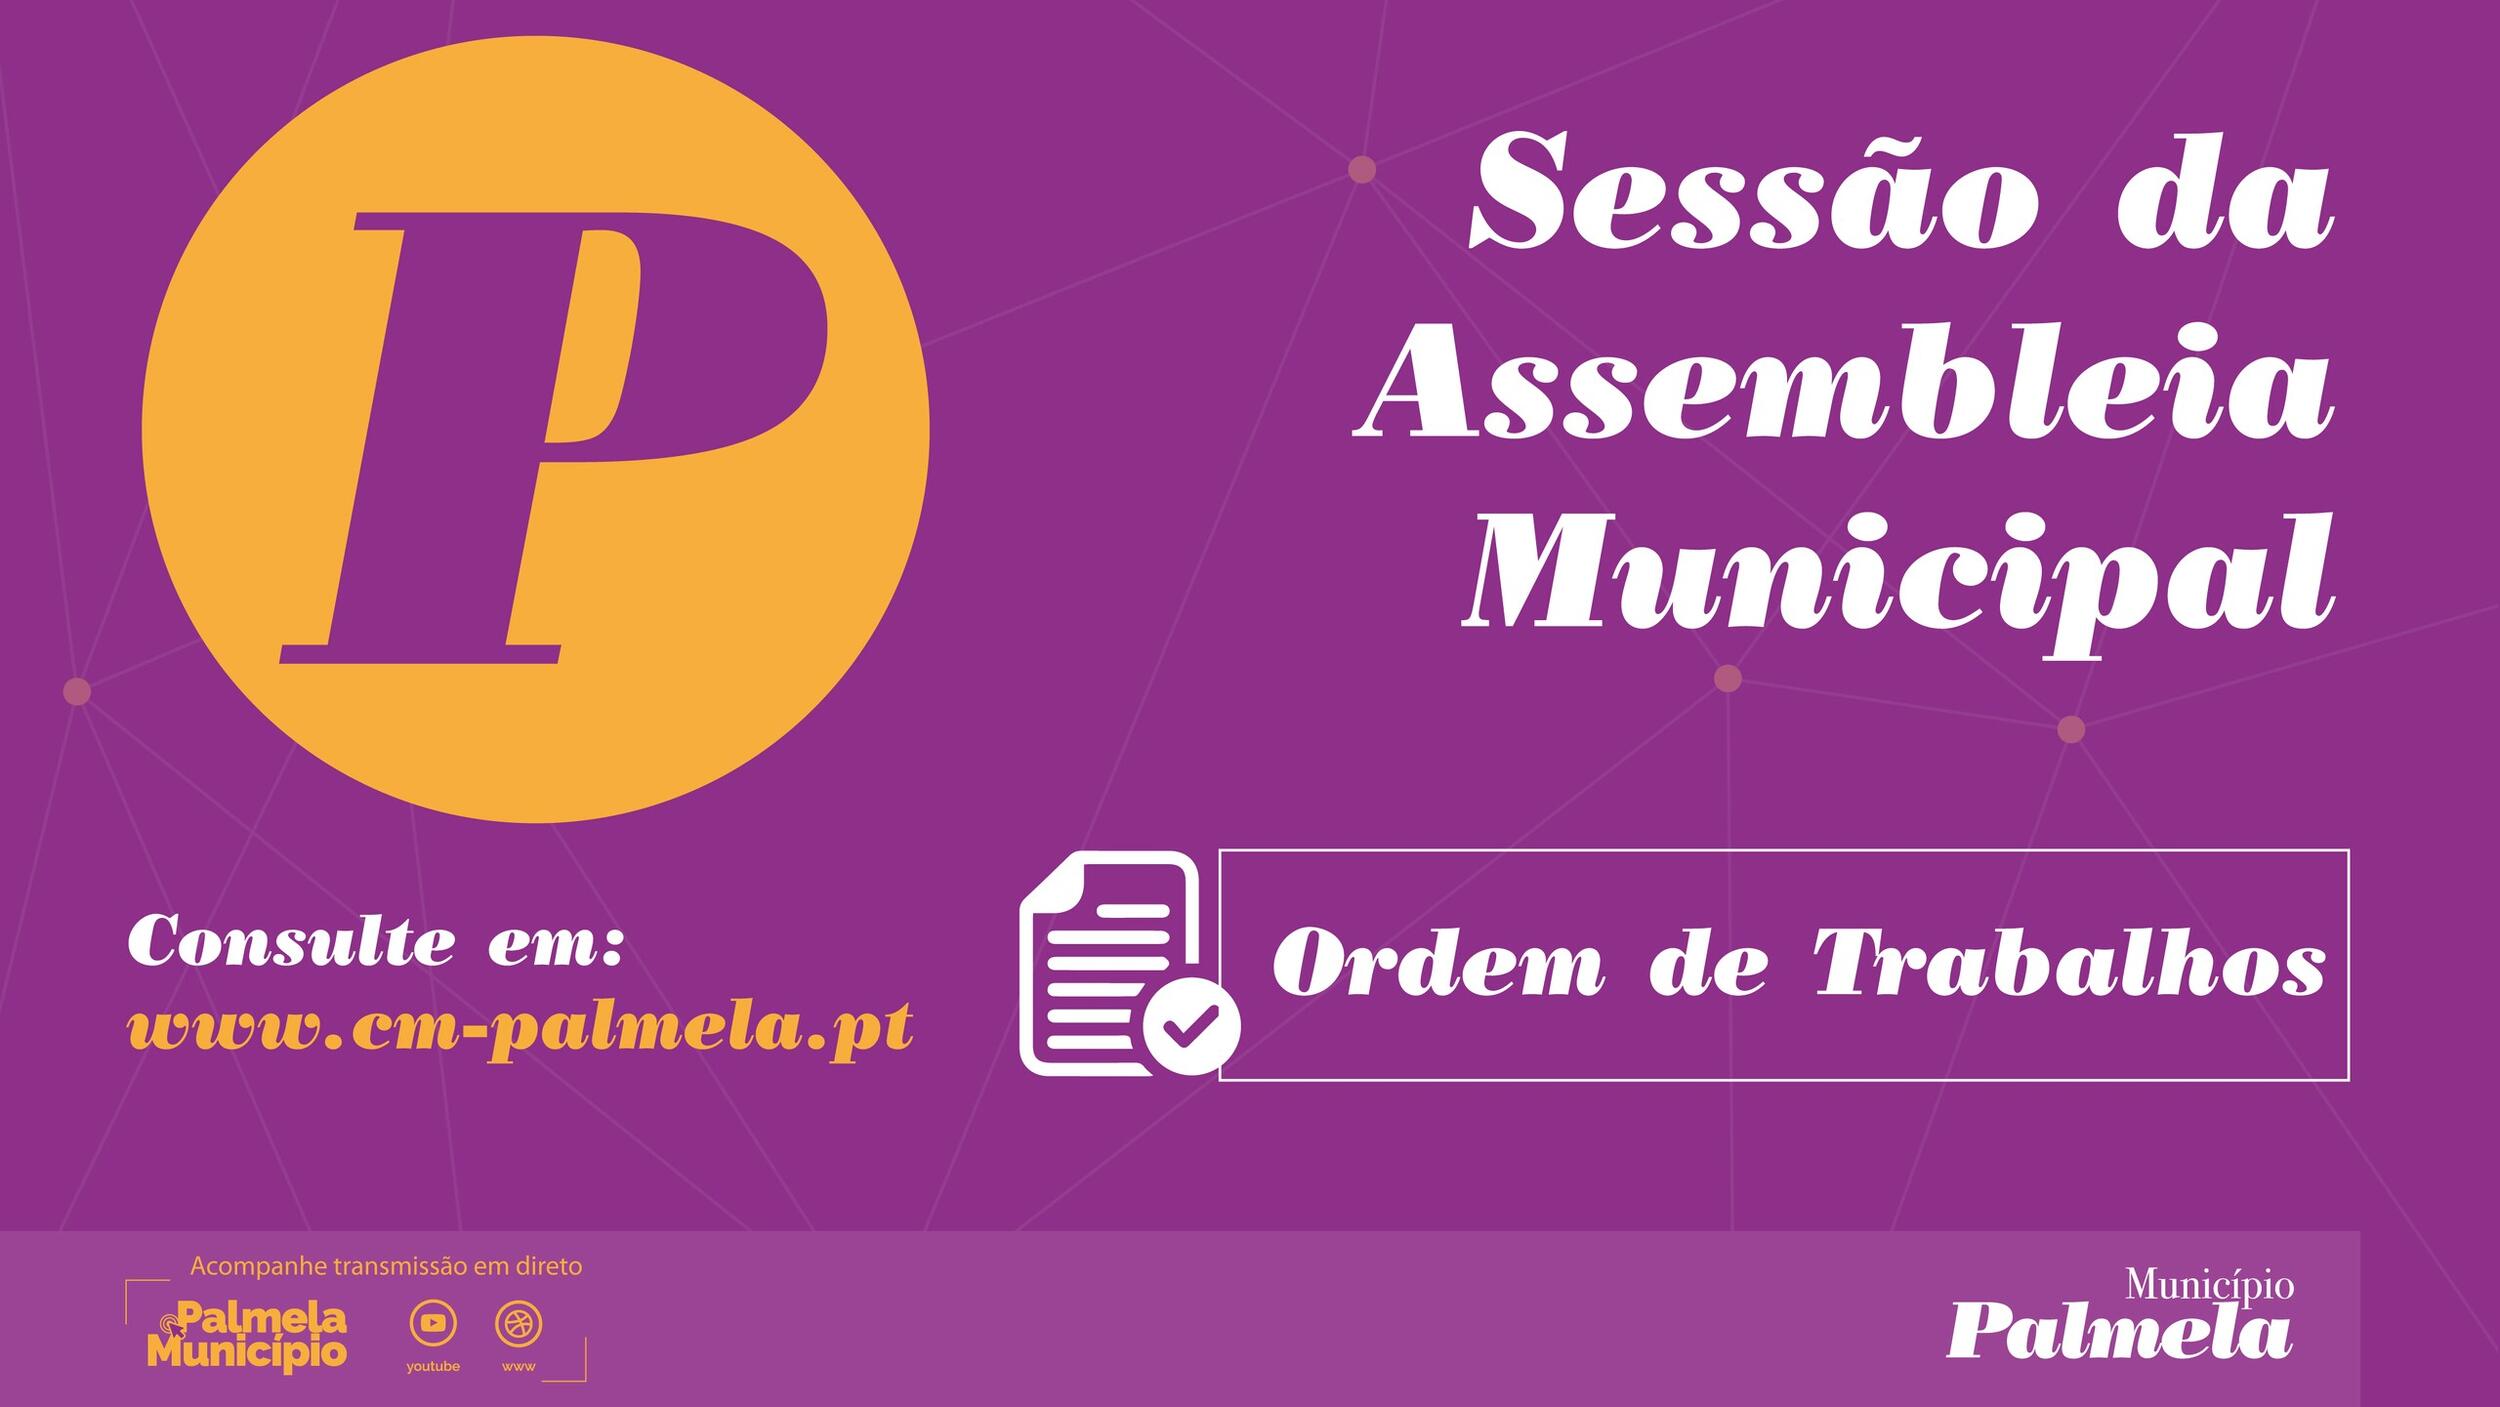 Assembleia Municipal - sessão extraordinária ADIADA para 5 dezembro. 